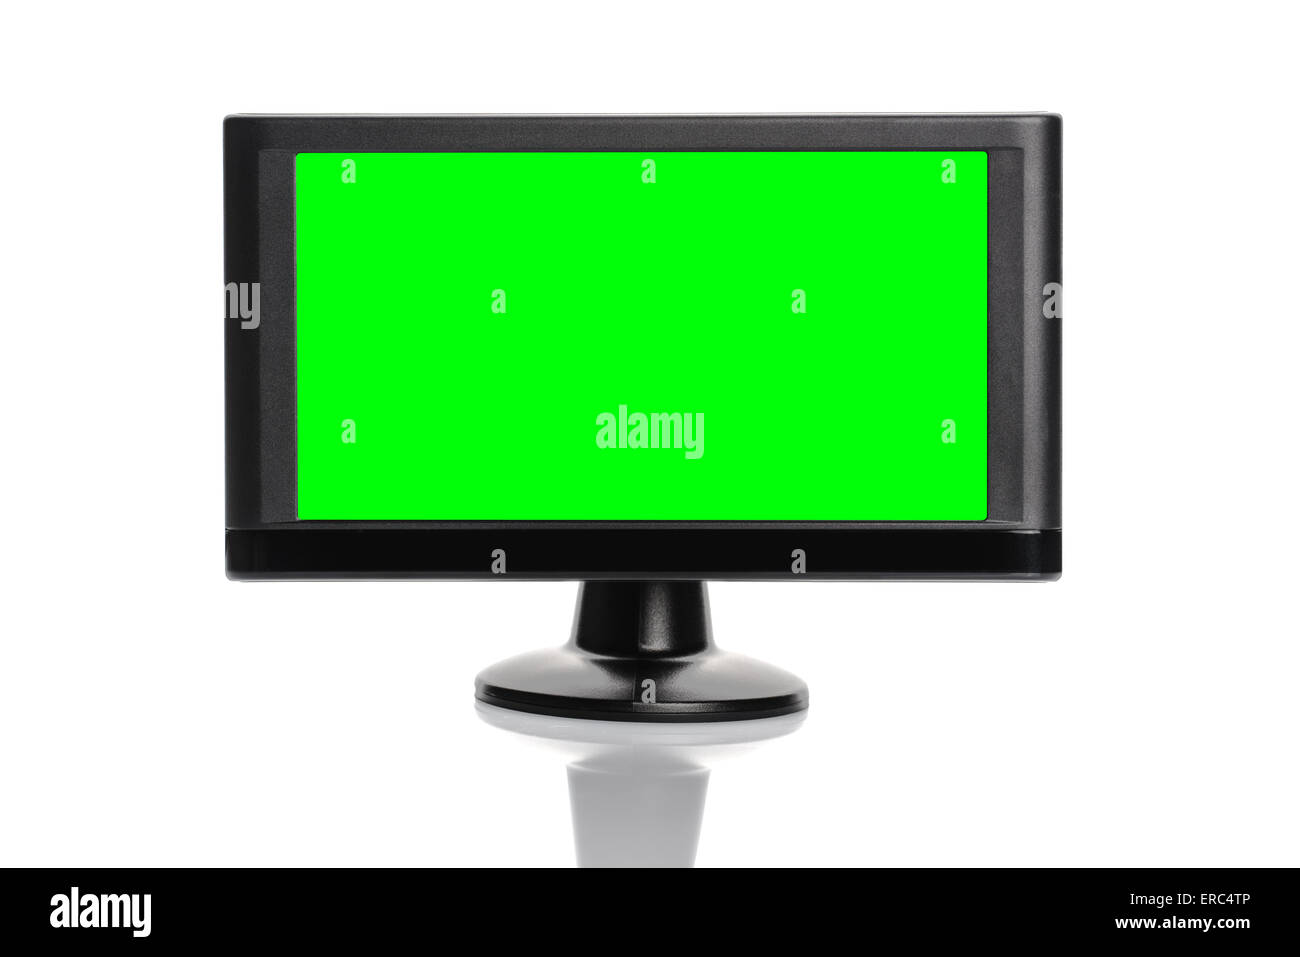 Di navigazione GPS per auto dispositivo con schermo verde come copia di spazio isolato su sfondo bianco Foto Stock